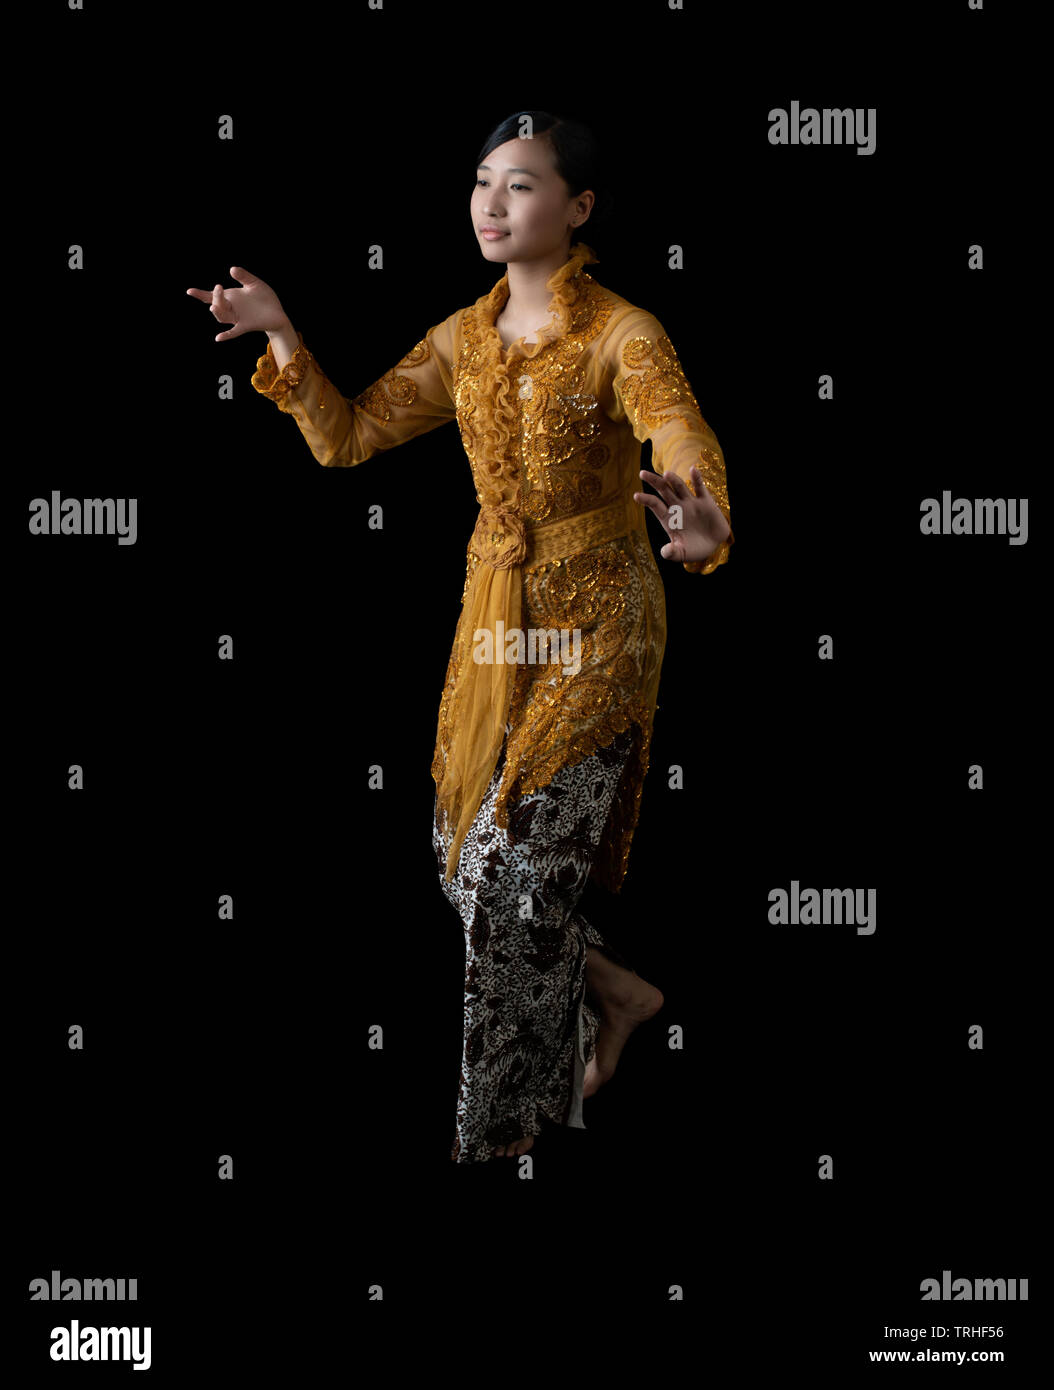 Ragazza indonesiana di eseguire la danza giavanese indossando vestiti tradizionali Foto Stock